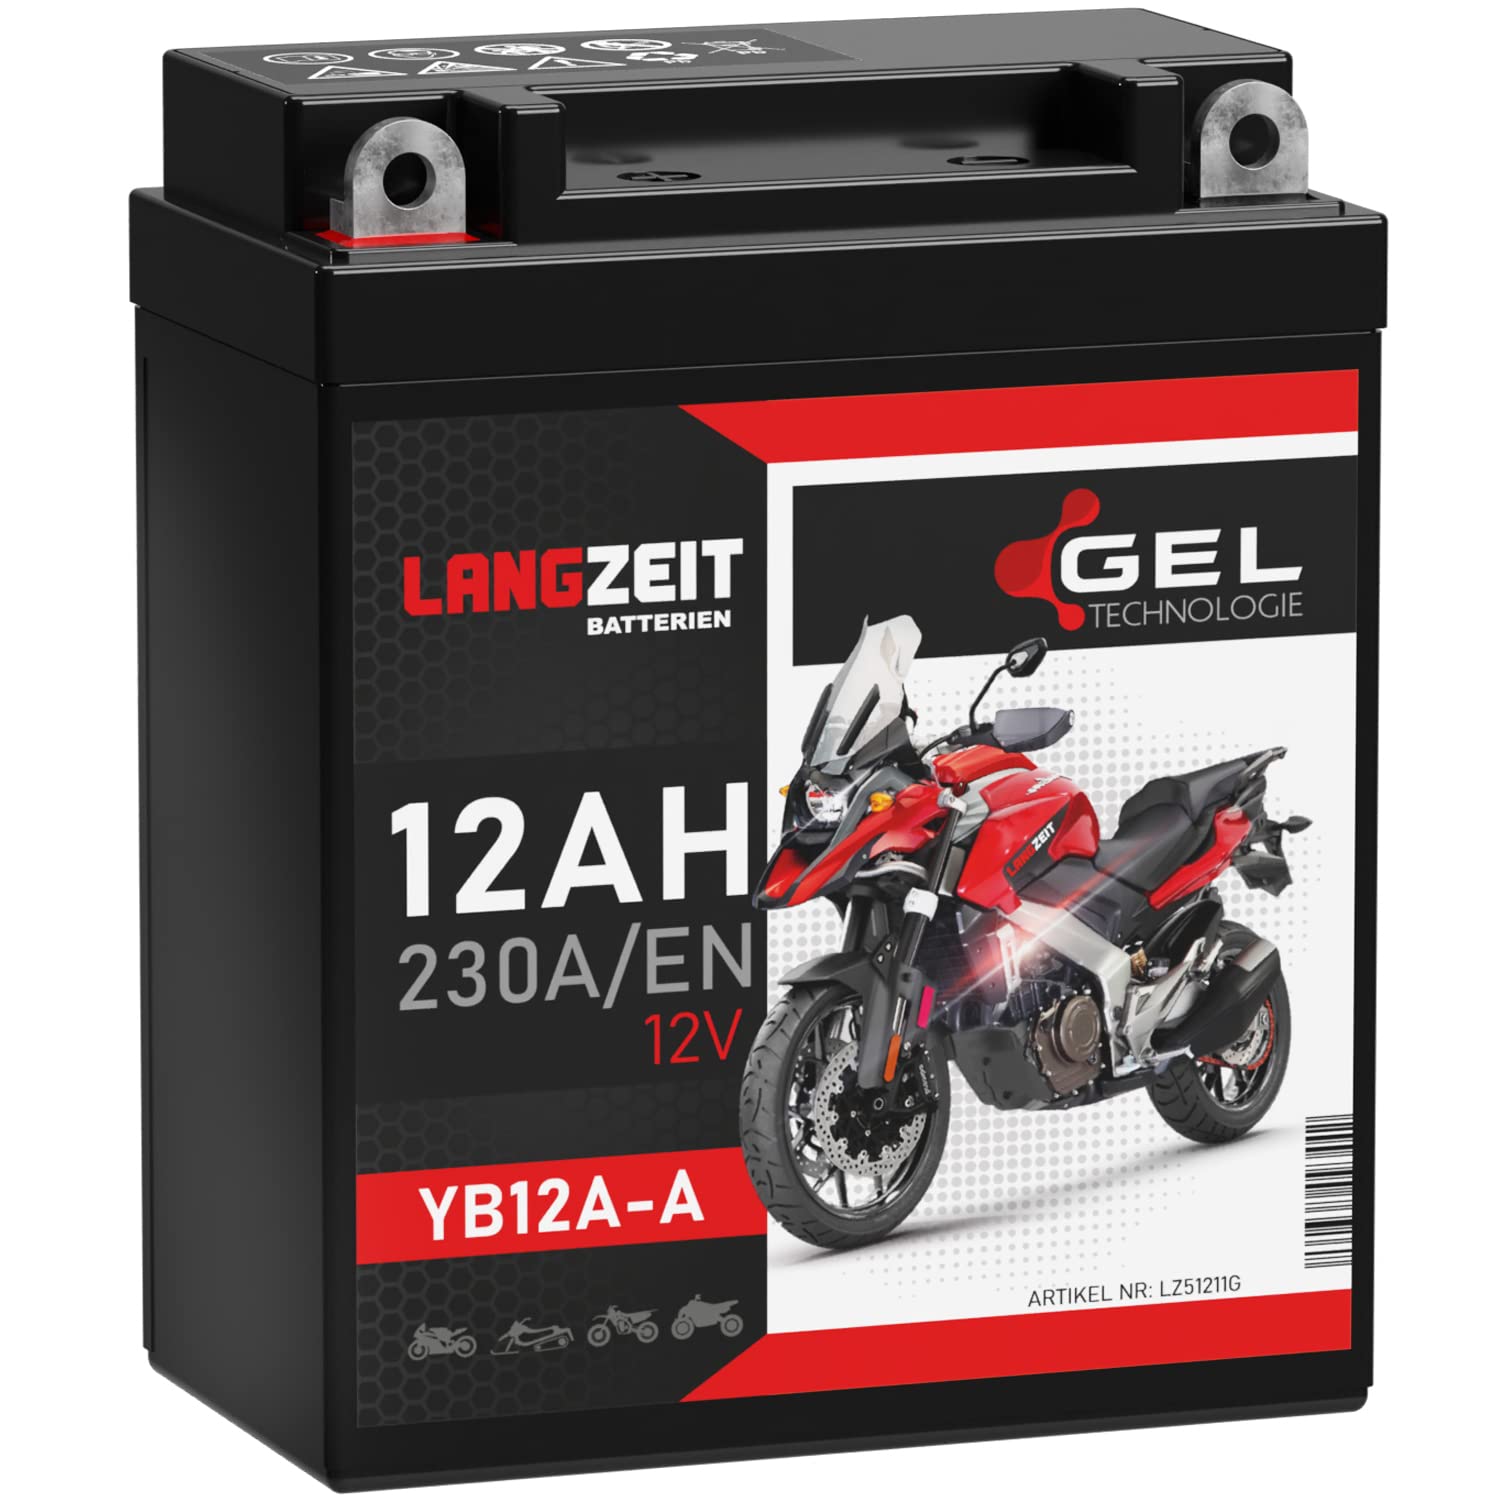 LANGZEIT YB12A-A GEL Motorradbatterie 12V 12Ah 230A/EN 51211 YB12A-B CB12A-A Gel Batterie 12V doppelte Lebensdauer vorgeladen auslaufsicher wartungsfrei ersetzt 10Ah von LANGZEIT Batterien